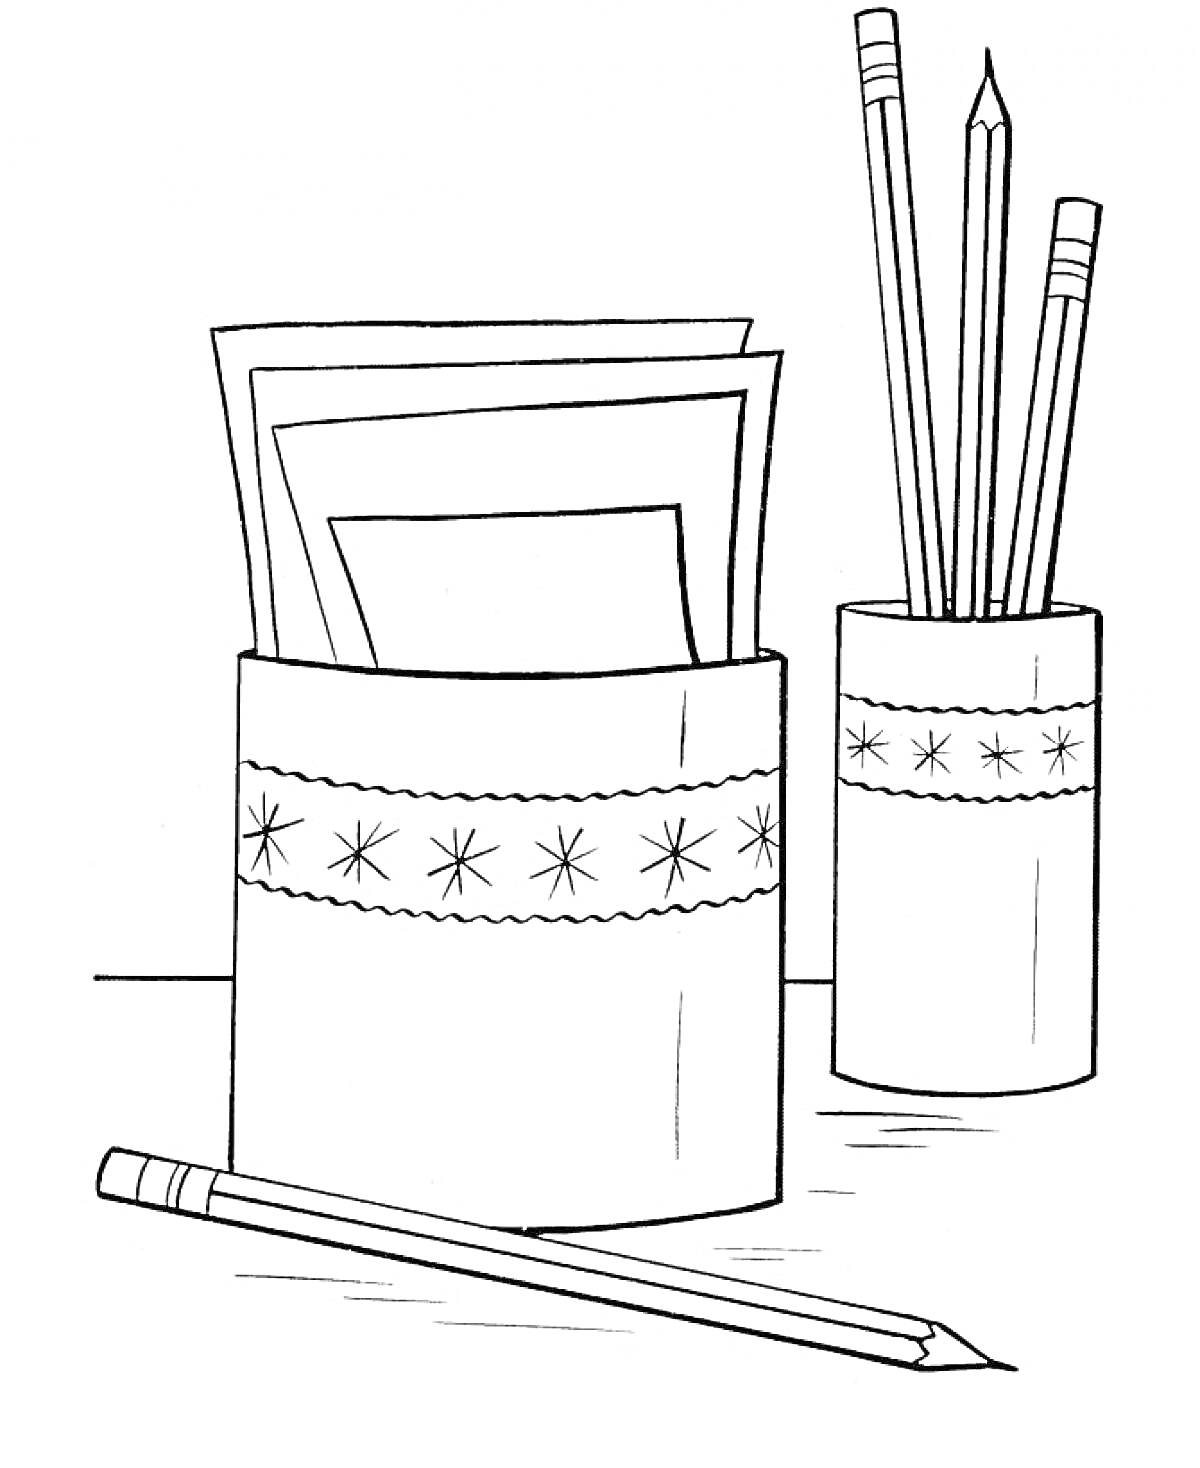 стакан для карандашей и листов бумаги, карандаши, листы бумаги, карандаш на столе